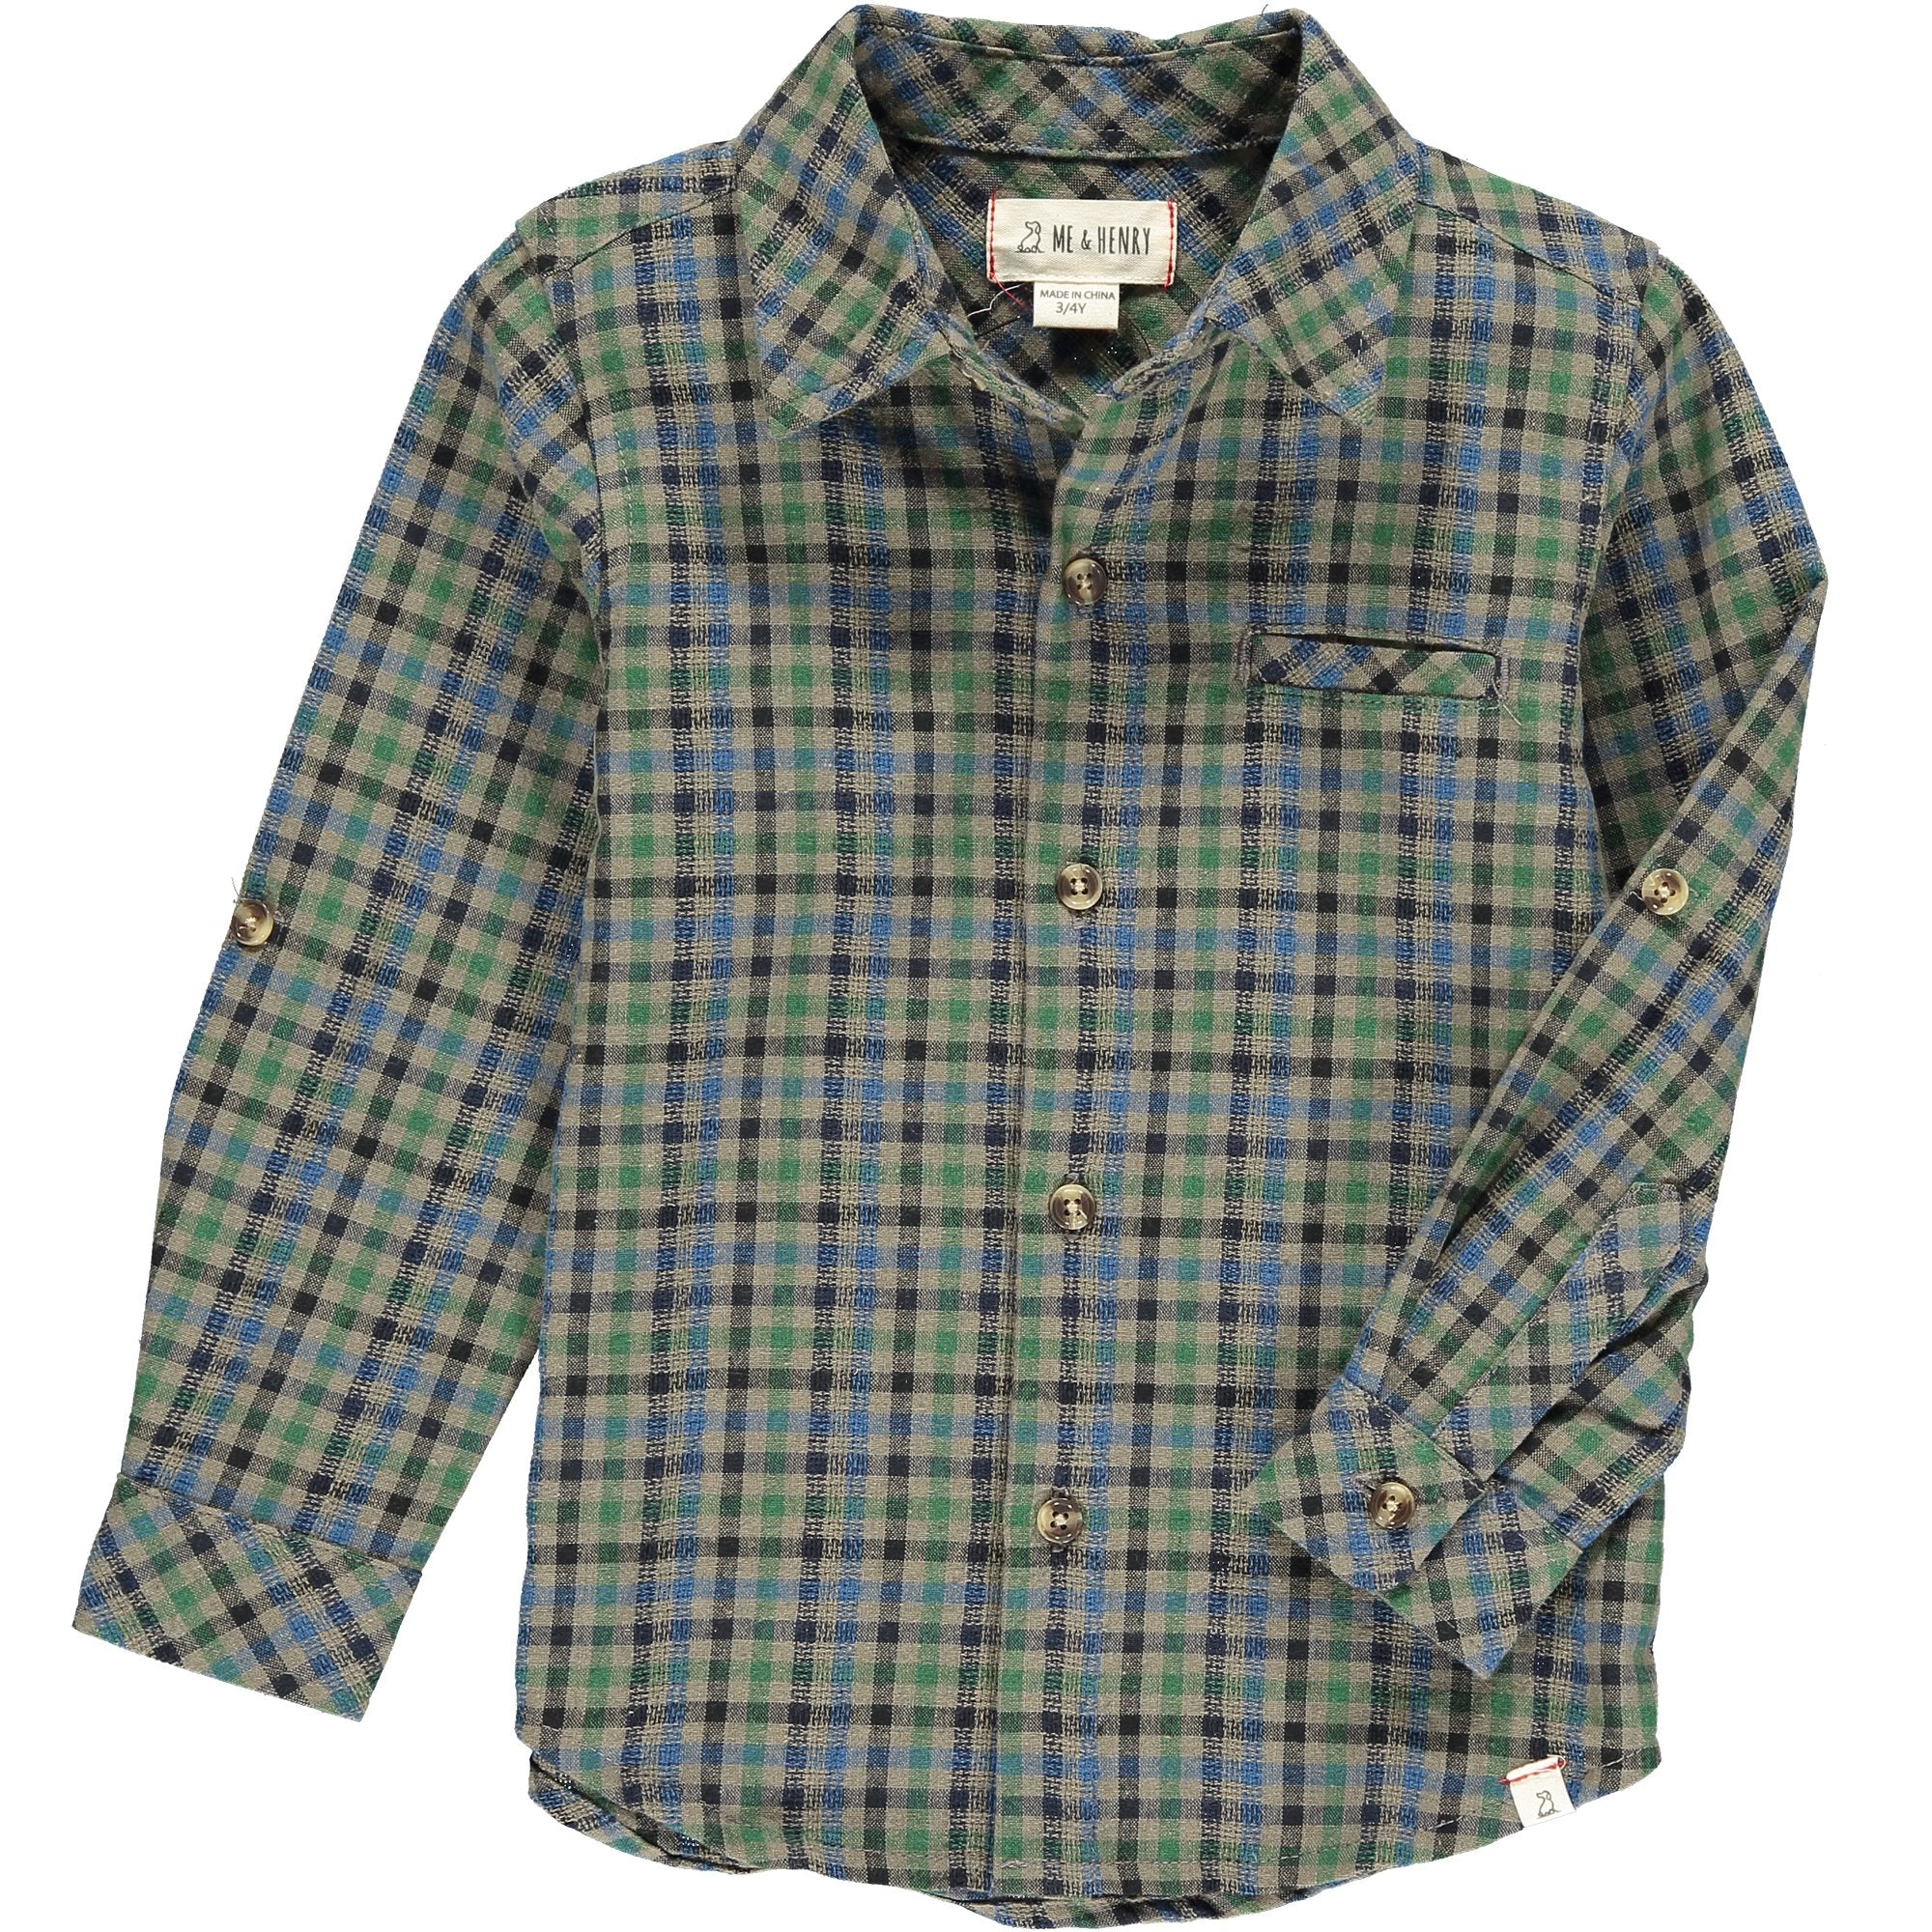 Men's Green/navy/blue plaid Woven Shirt